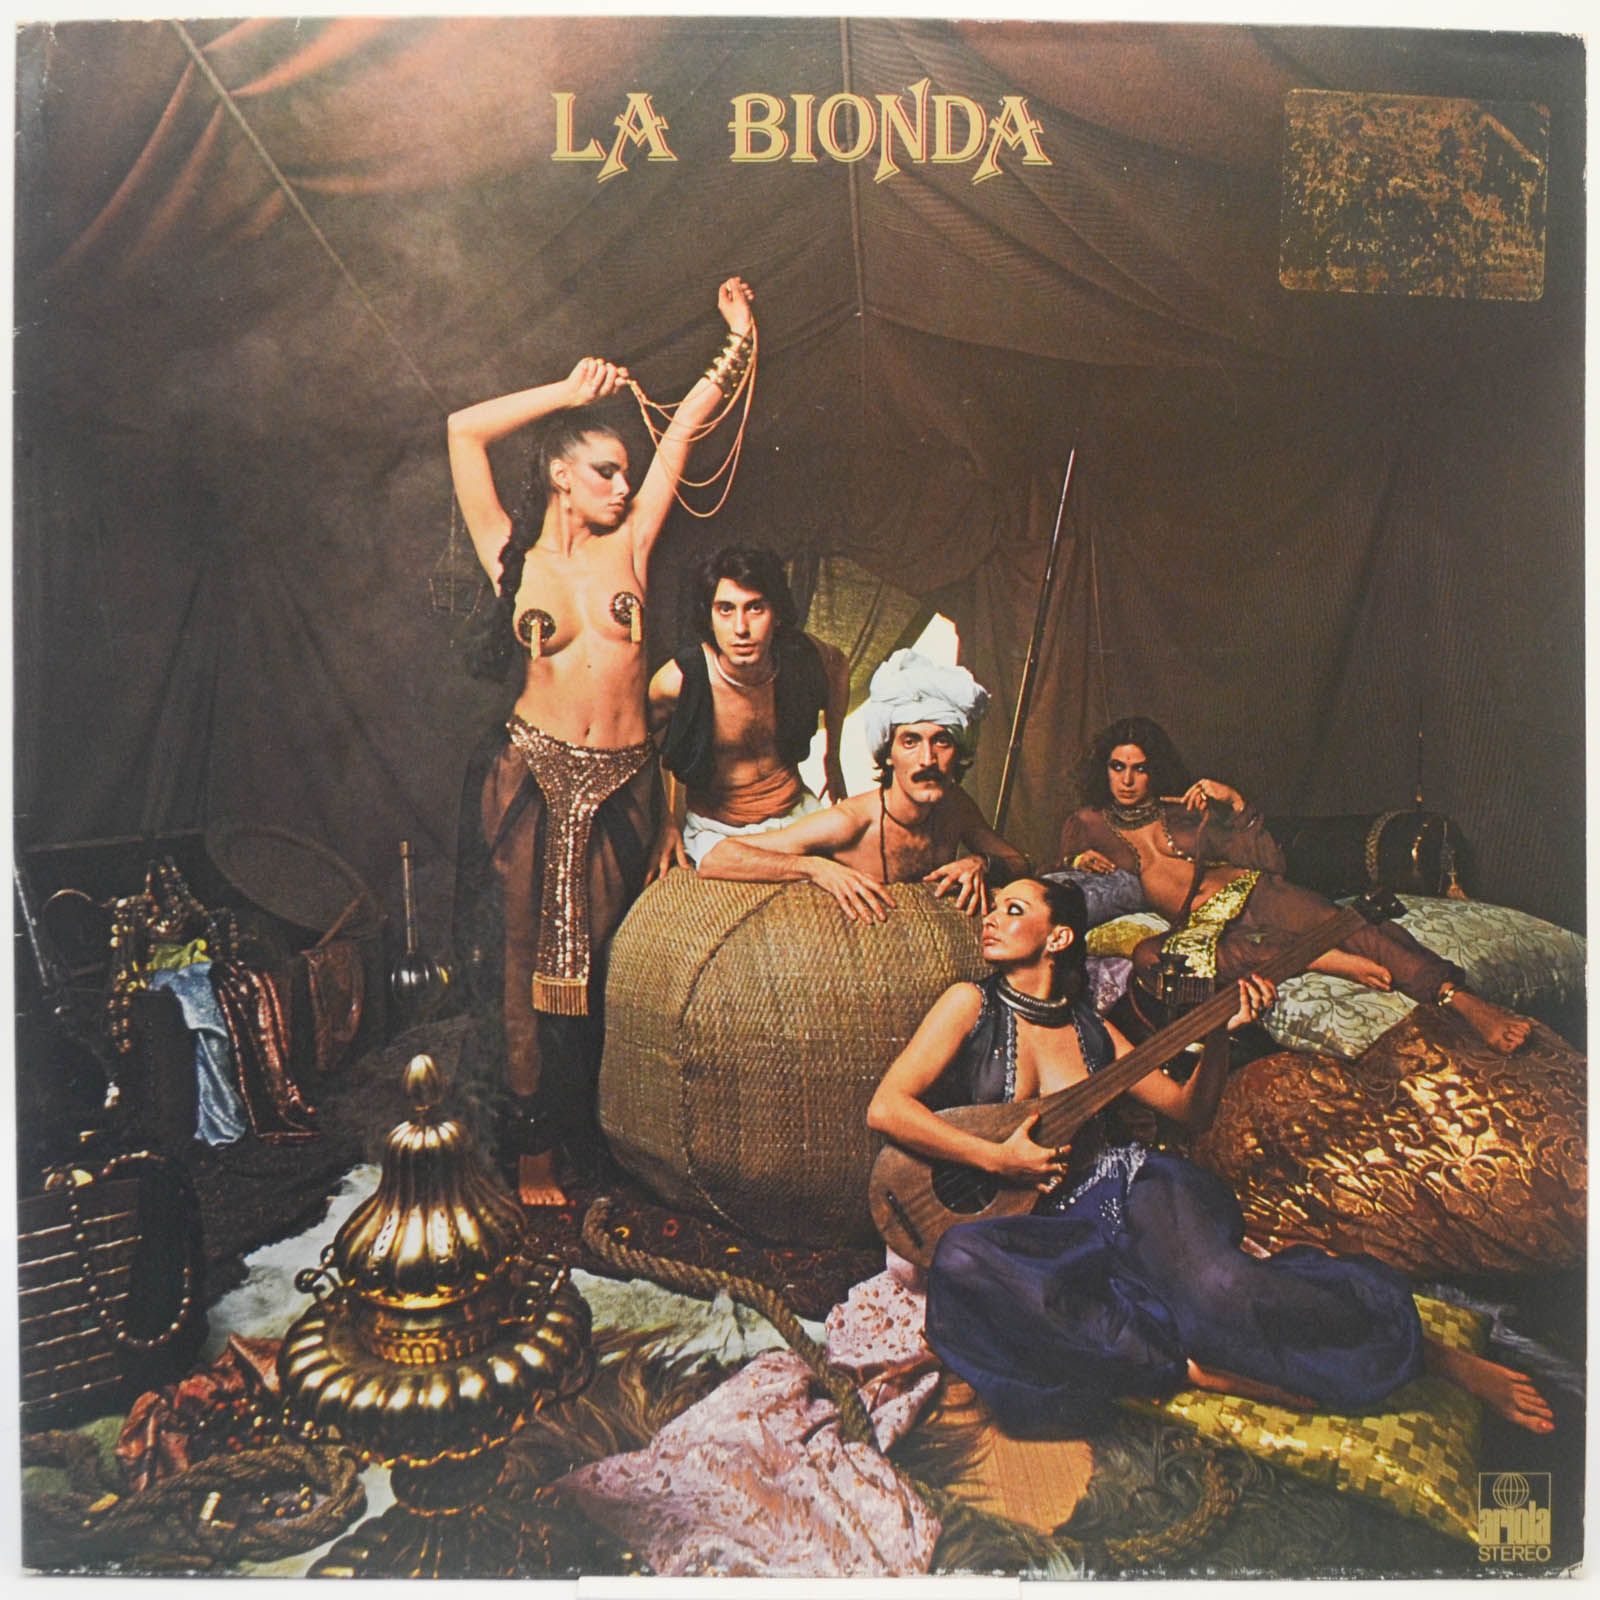 La Bionda — La Bionda, 1978